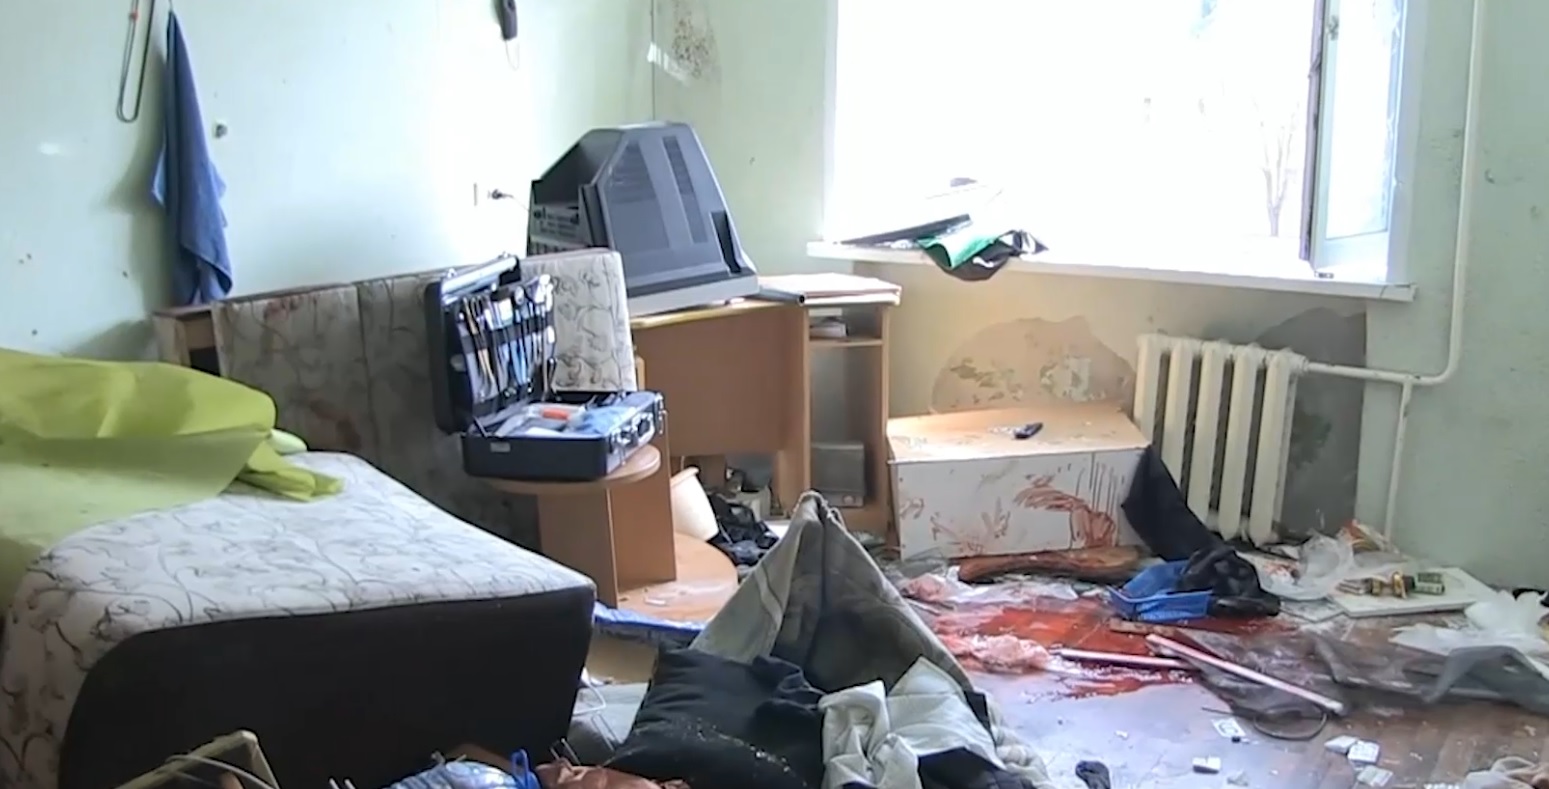 Пытался ударить креслом и махал топором: в МВД рассказали подробности штурма общежития на Сортировке